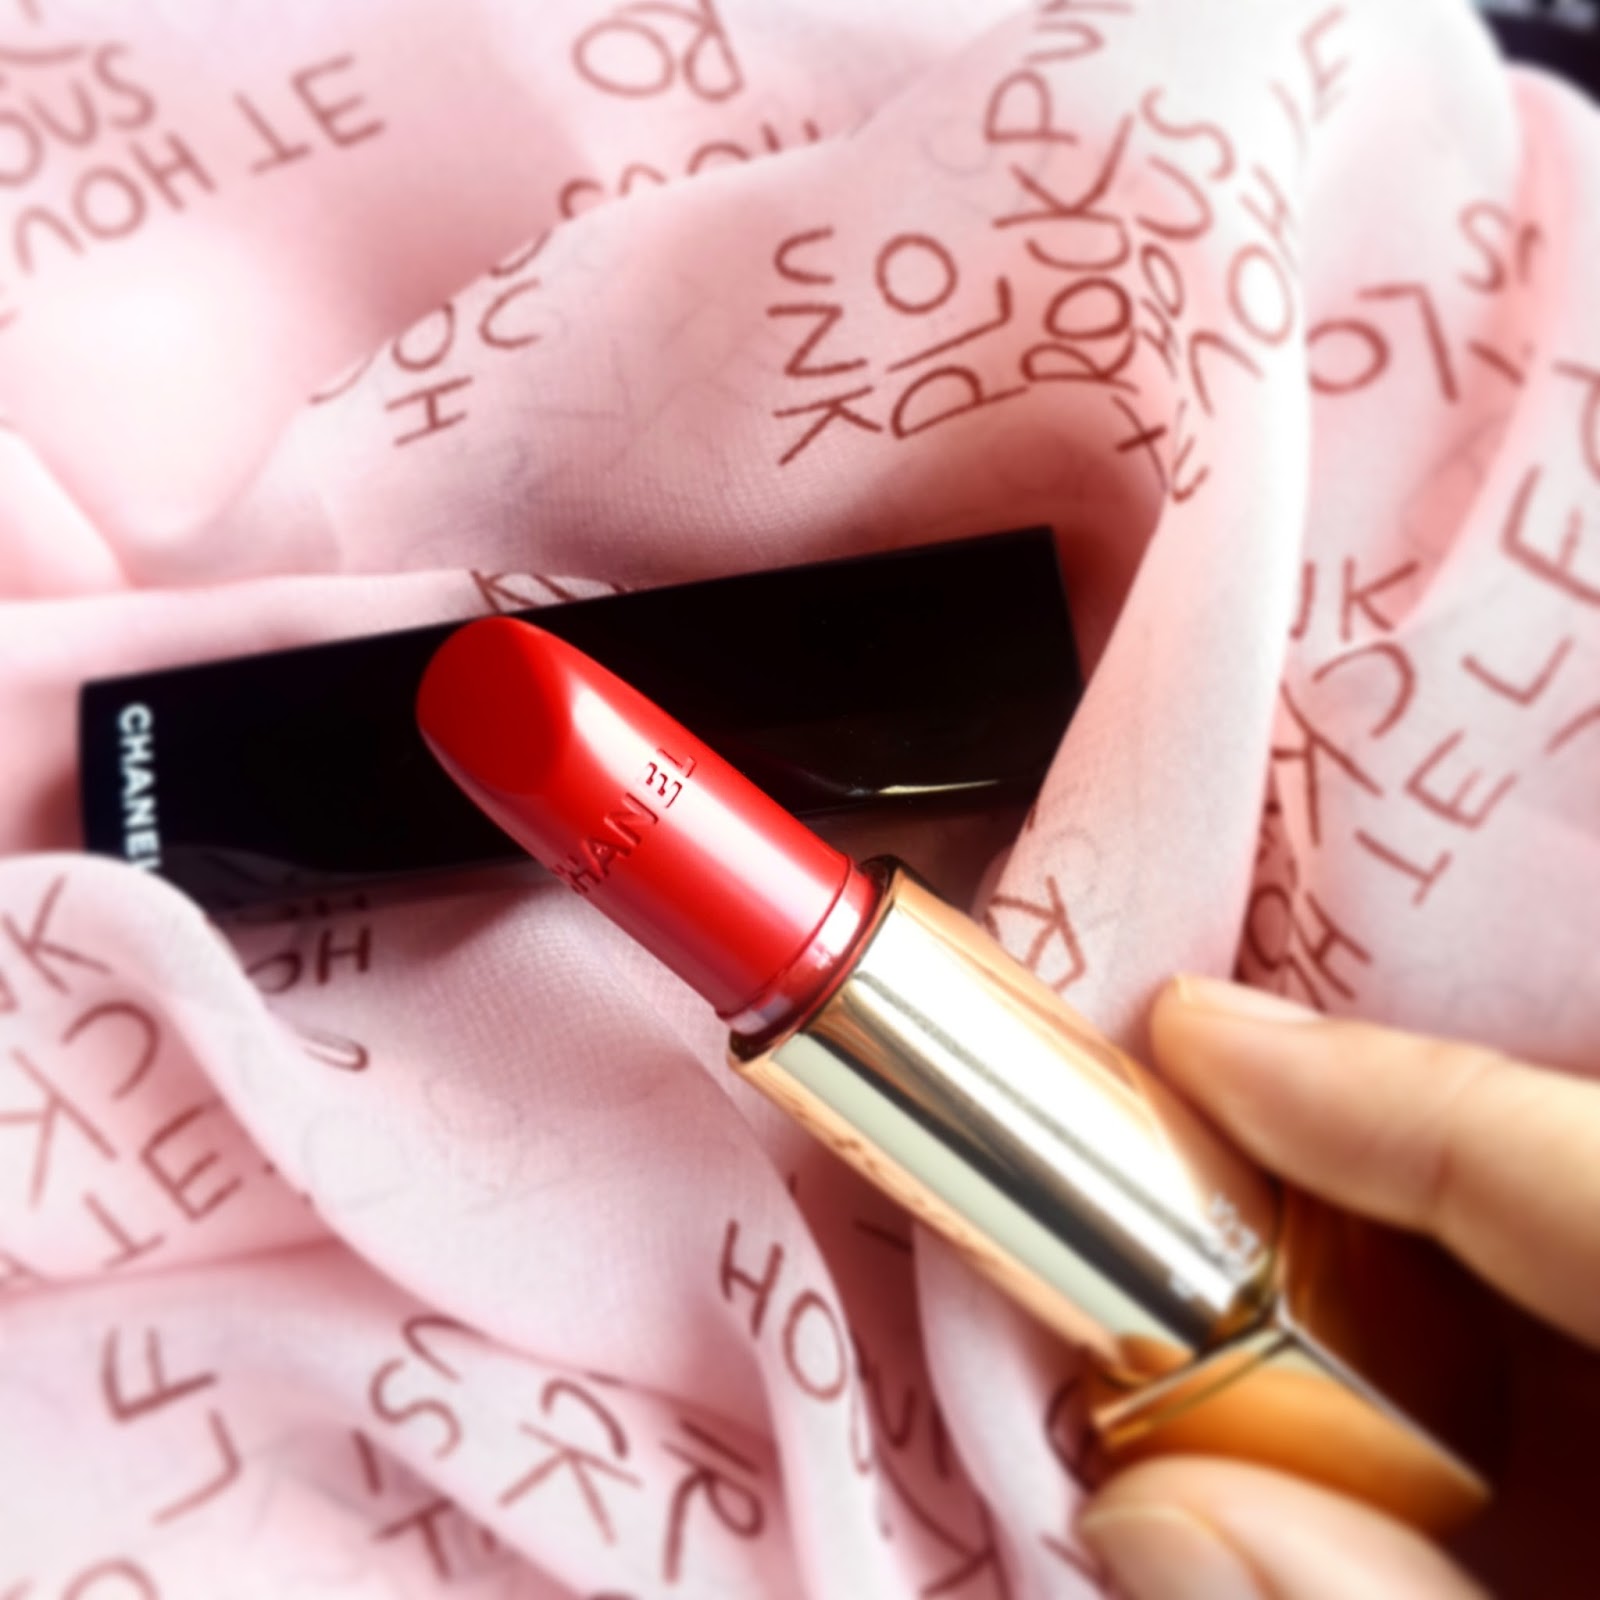 RIDZI MAKEUP: best red lipsticks